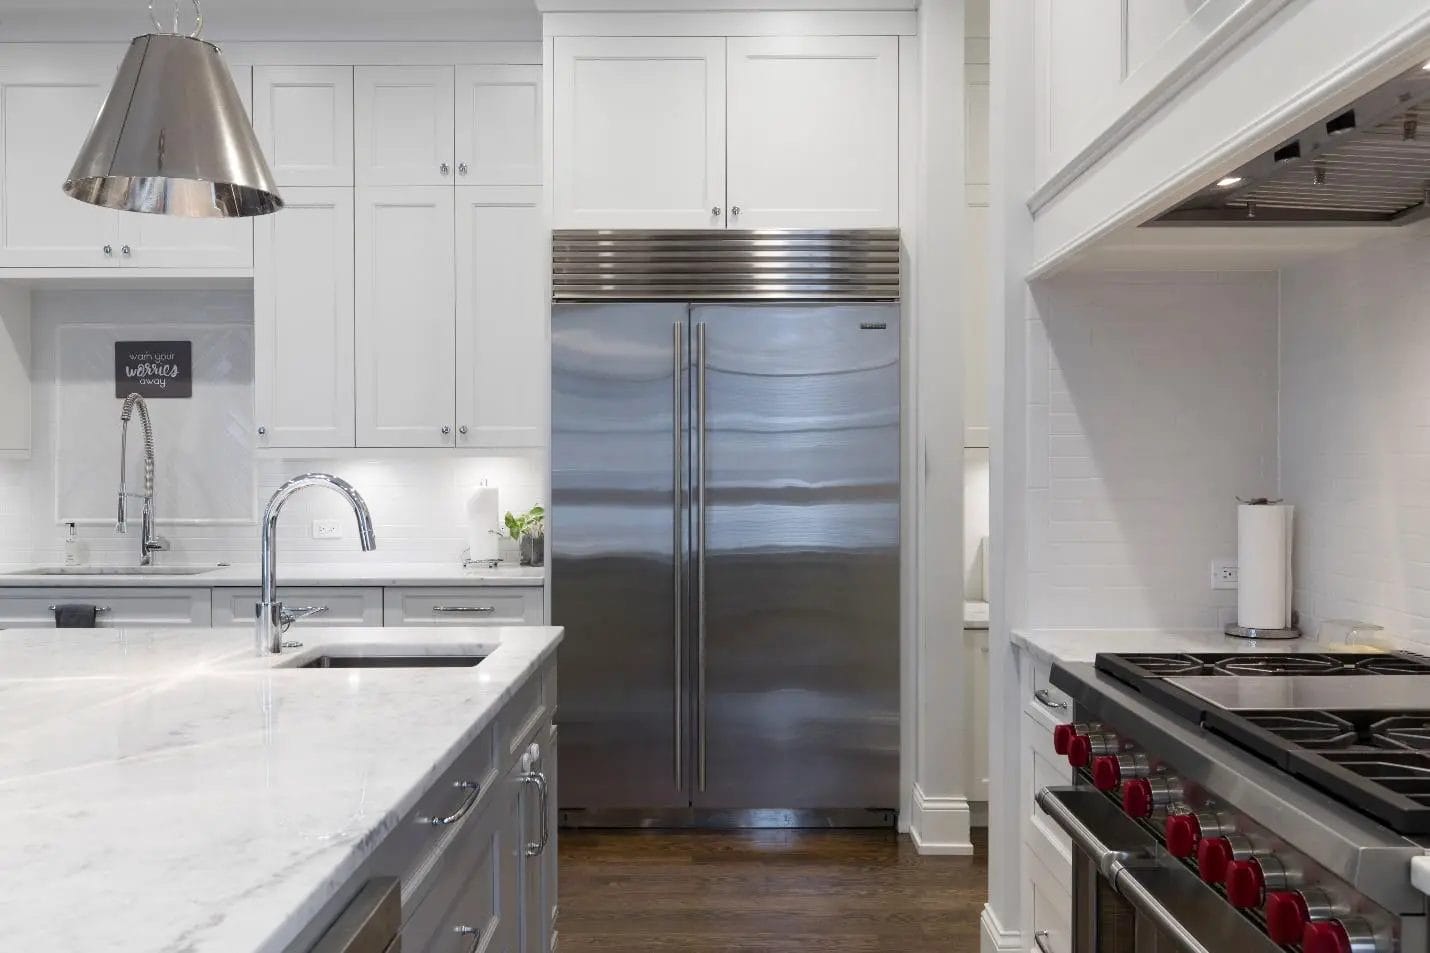 Top 11 Ways to Make Your Double-Door Refrigerator More Energy Efficient